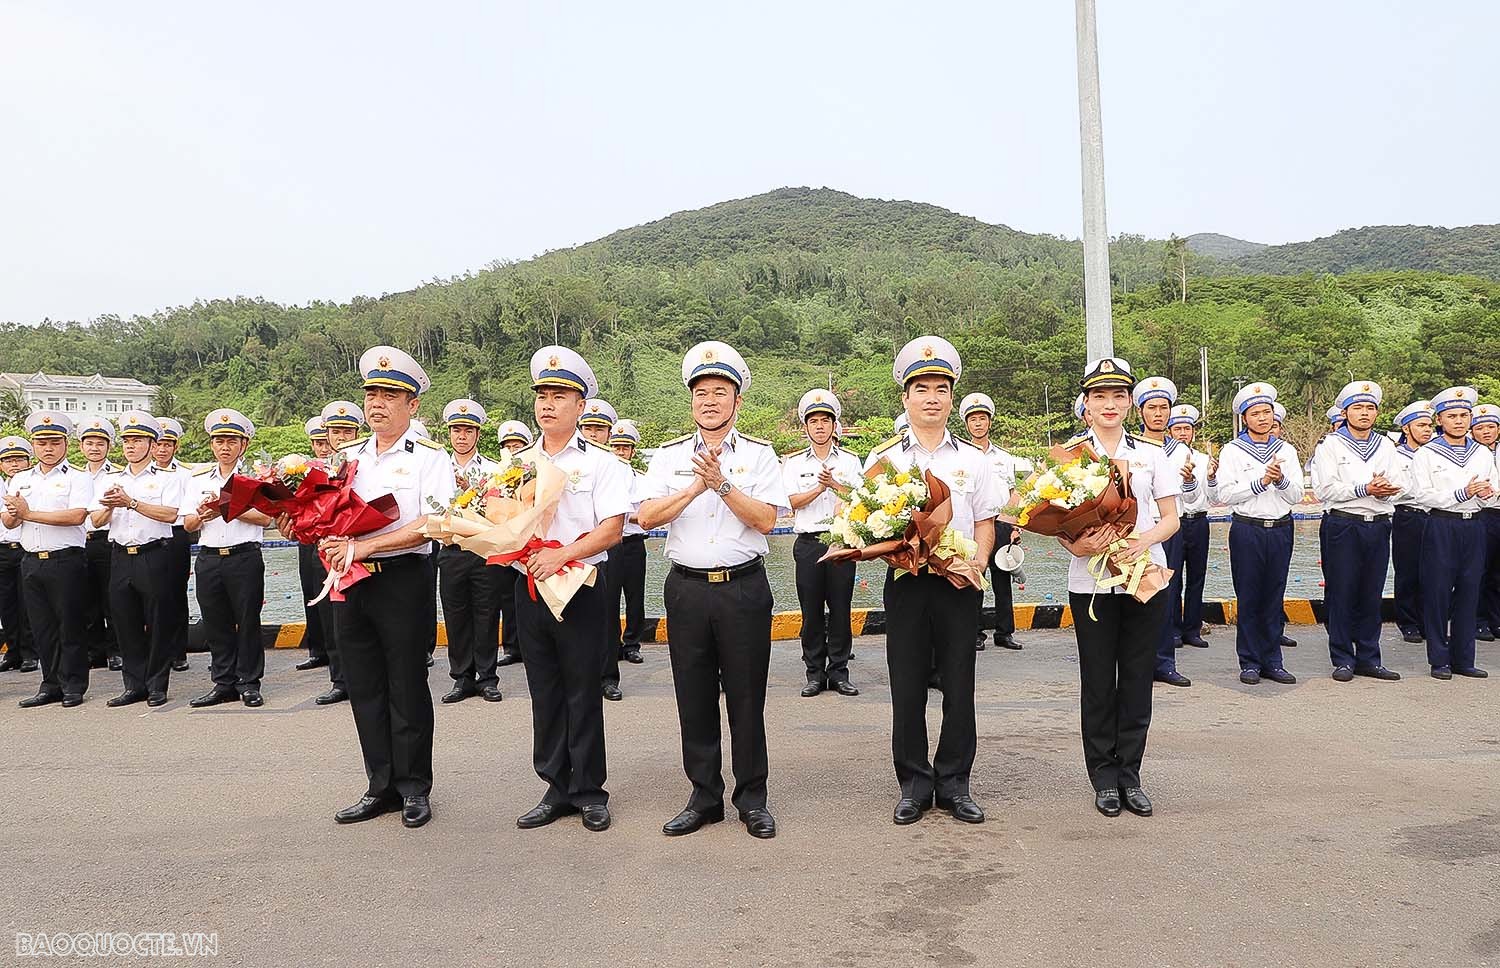 4.Thủ trưởng Bộ Tư lệnh Vùng 3 chúc mừng Tàu 20 và đoàn công tác hoàn thành tốt nhiệm vụ đối ngoại quốc phòng